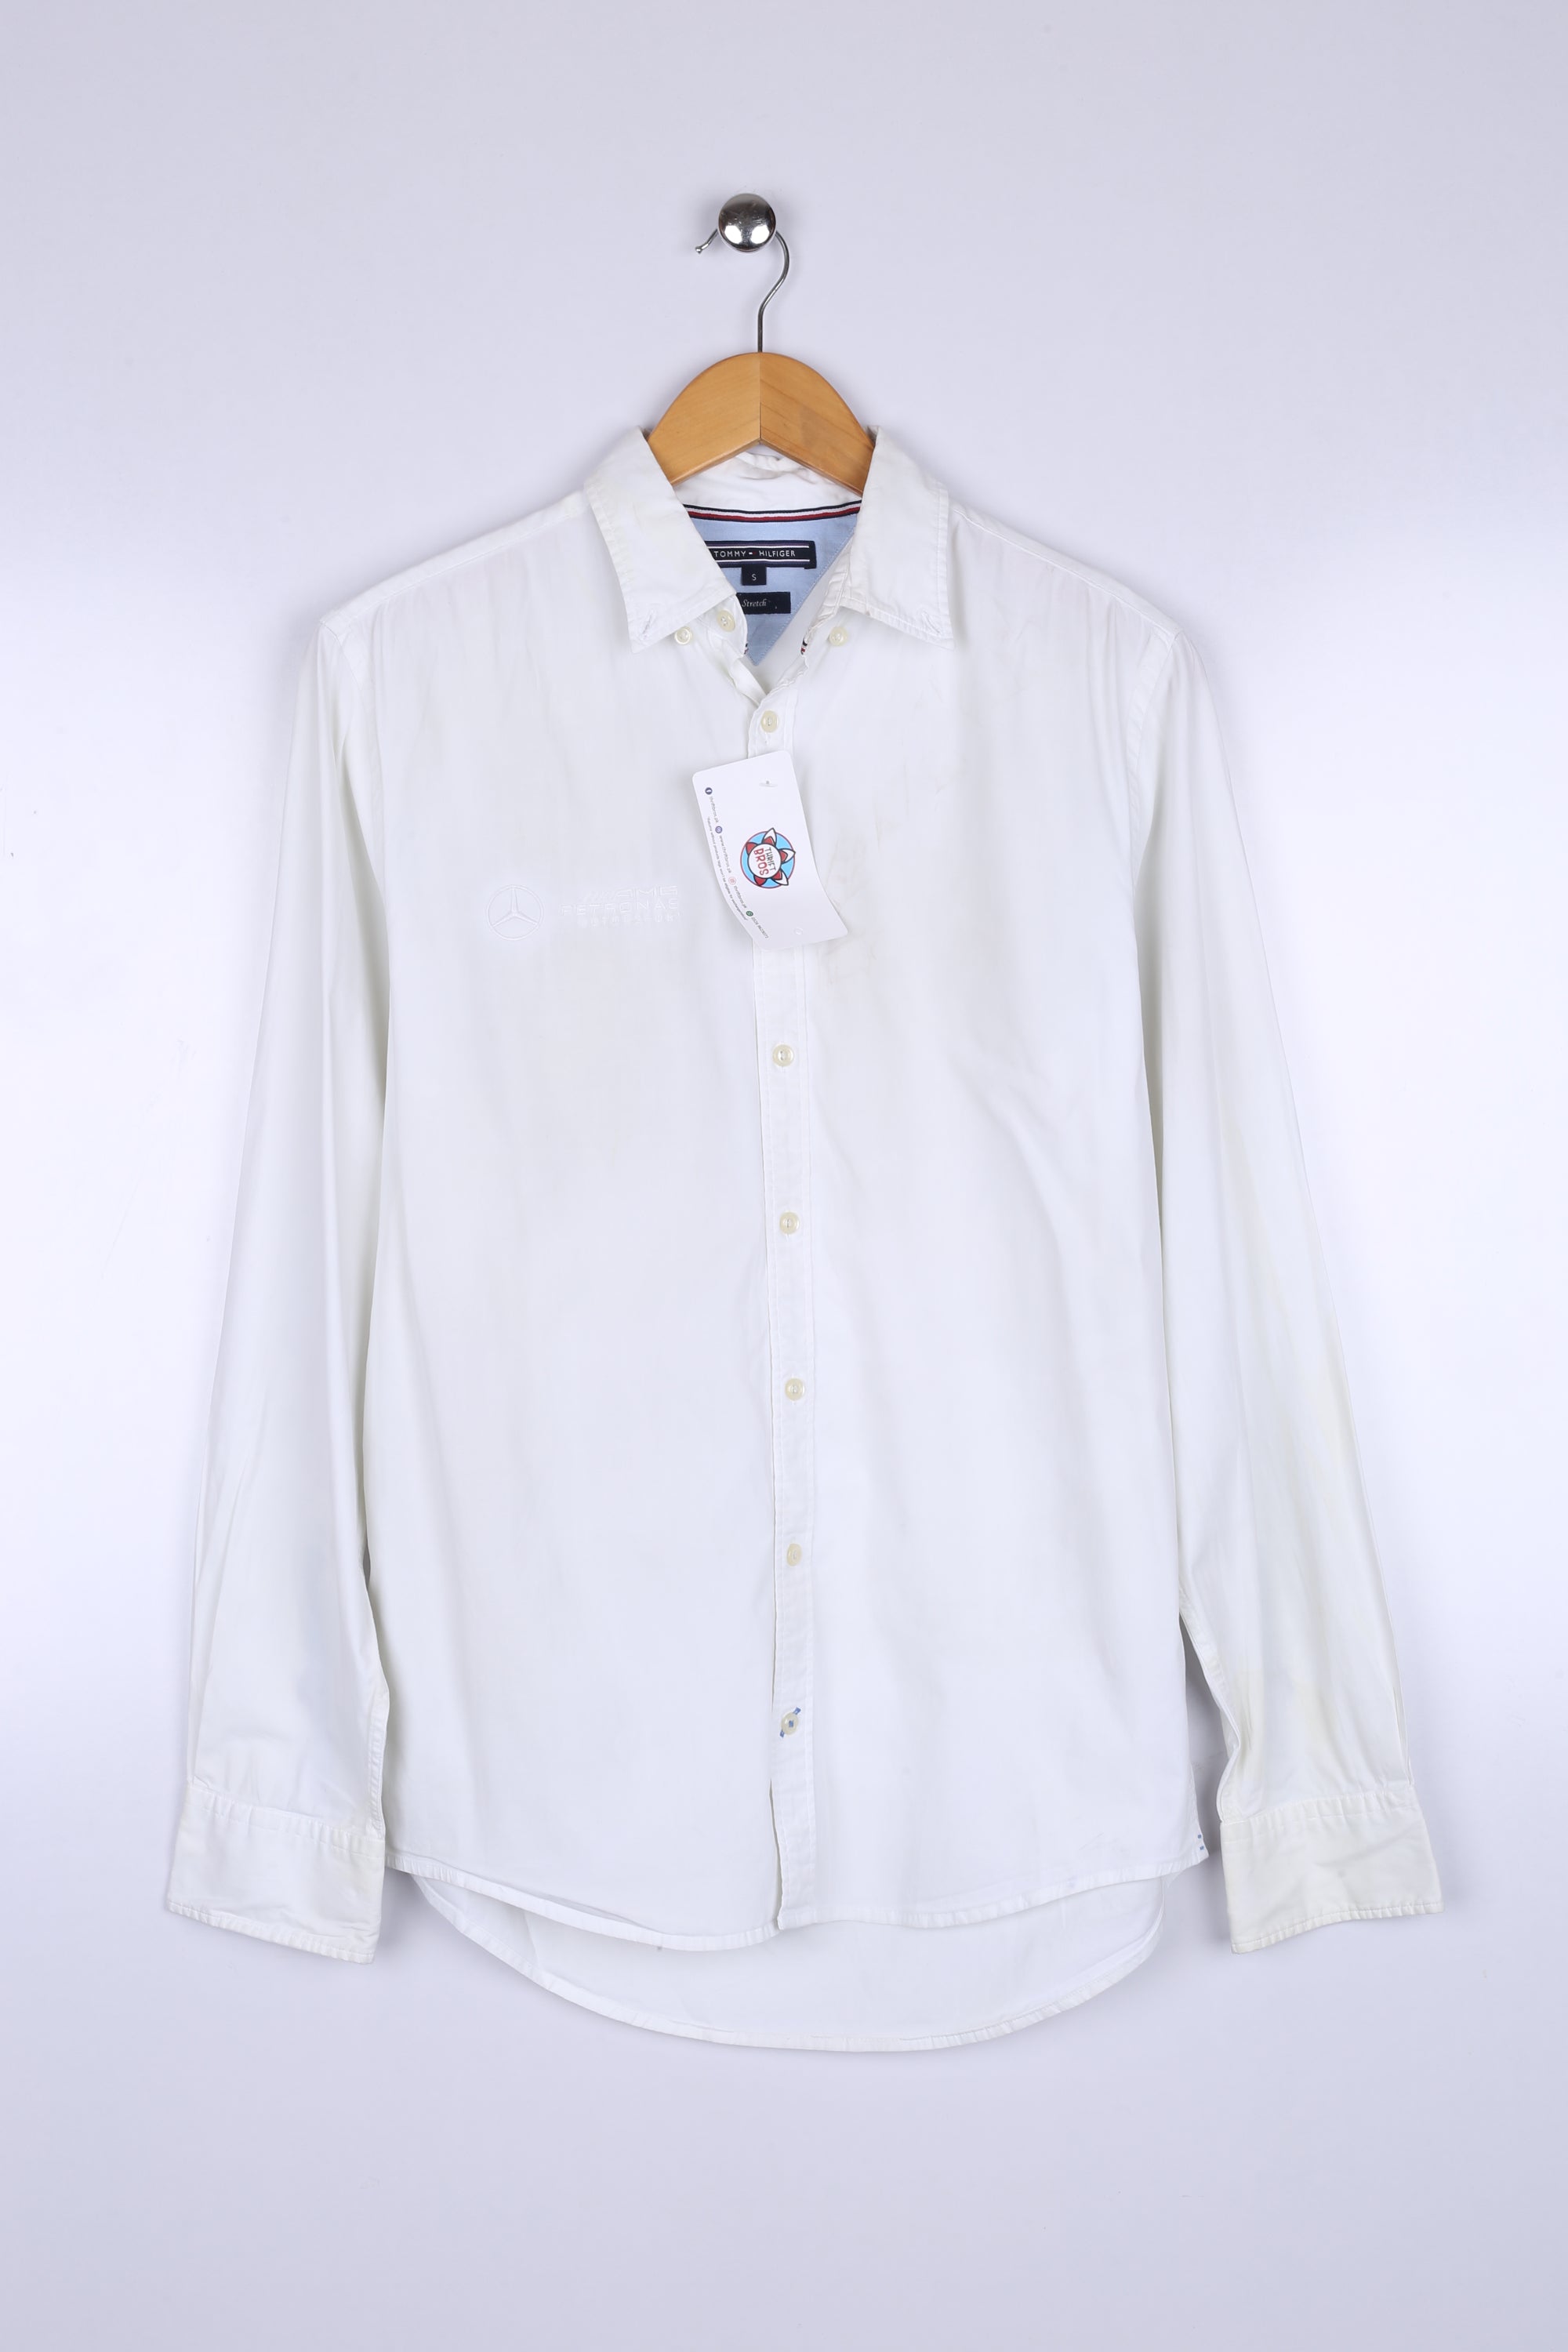 Vintage Tommy Hilfiger Shirt White